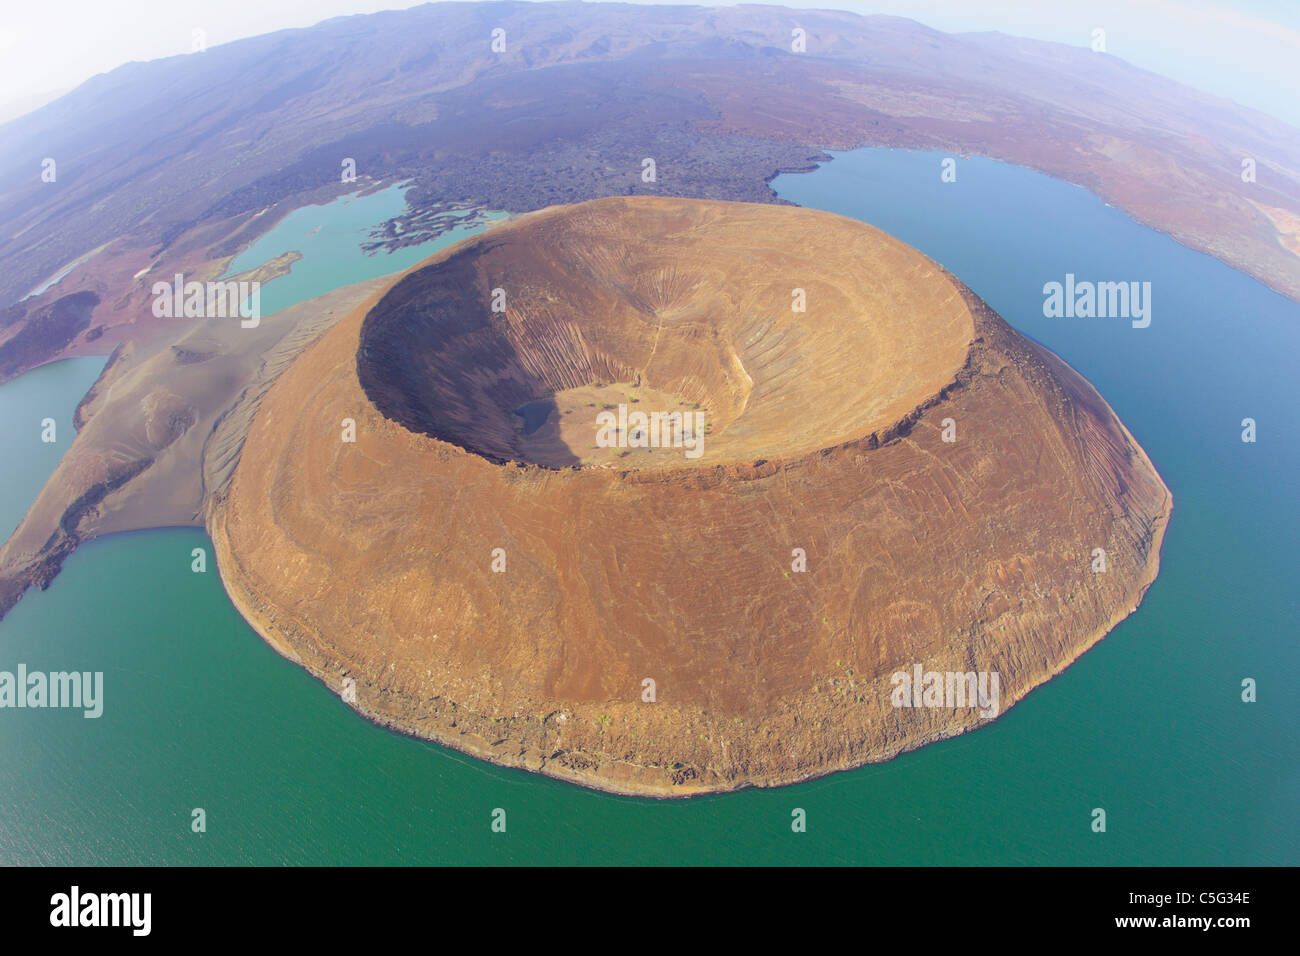 Il lago Turkana è situato nella Grande Rift Valley in Kenya.it è il più grande lago del deserto. Foto Stock